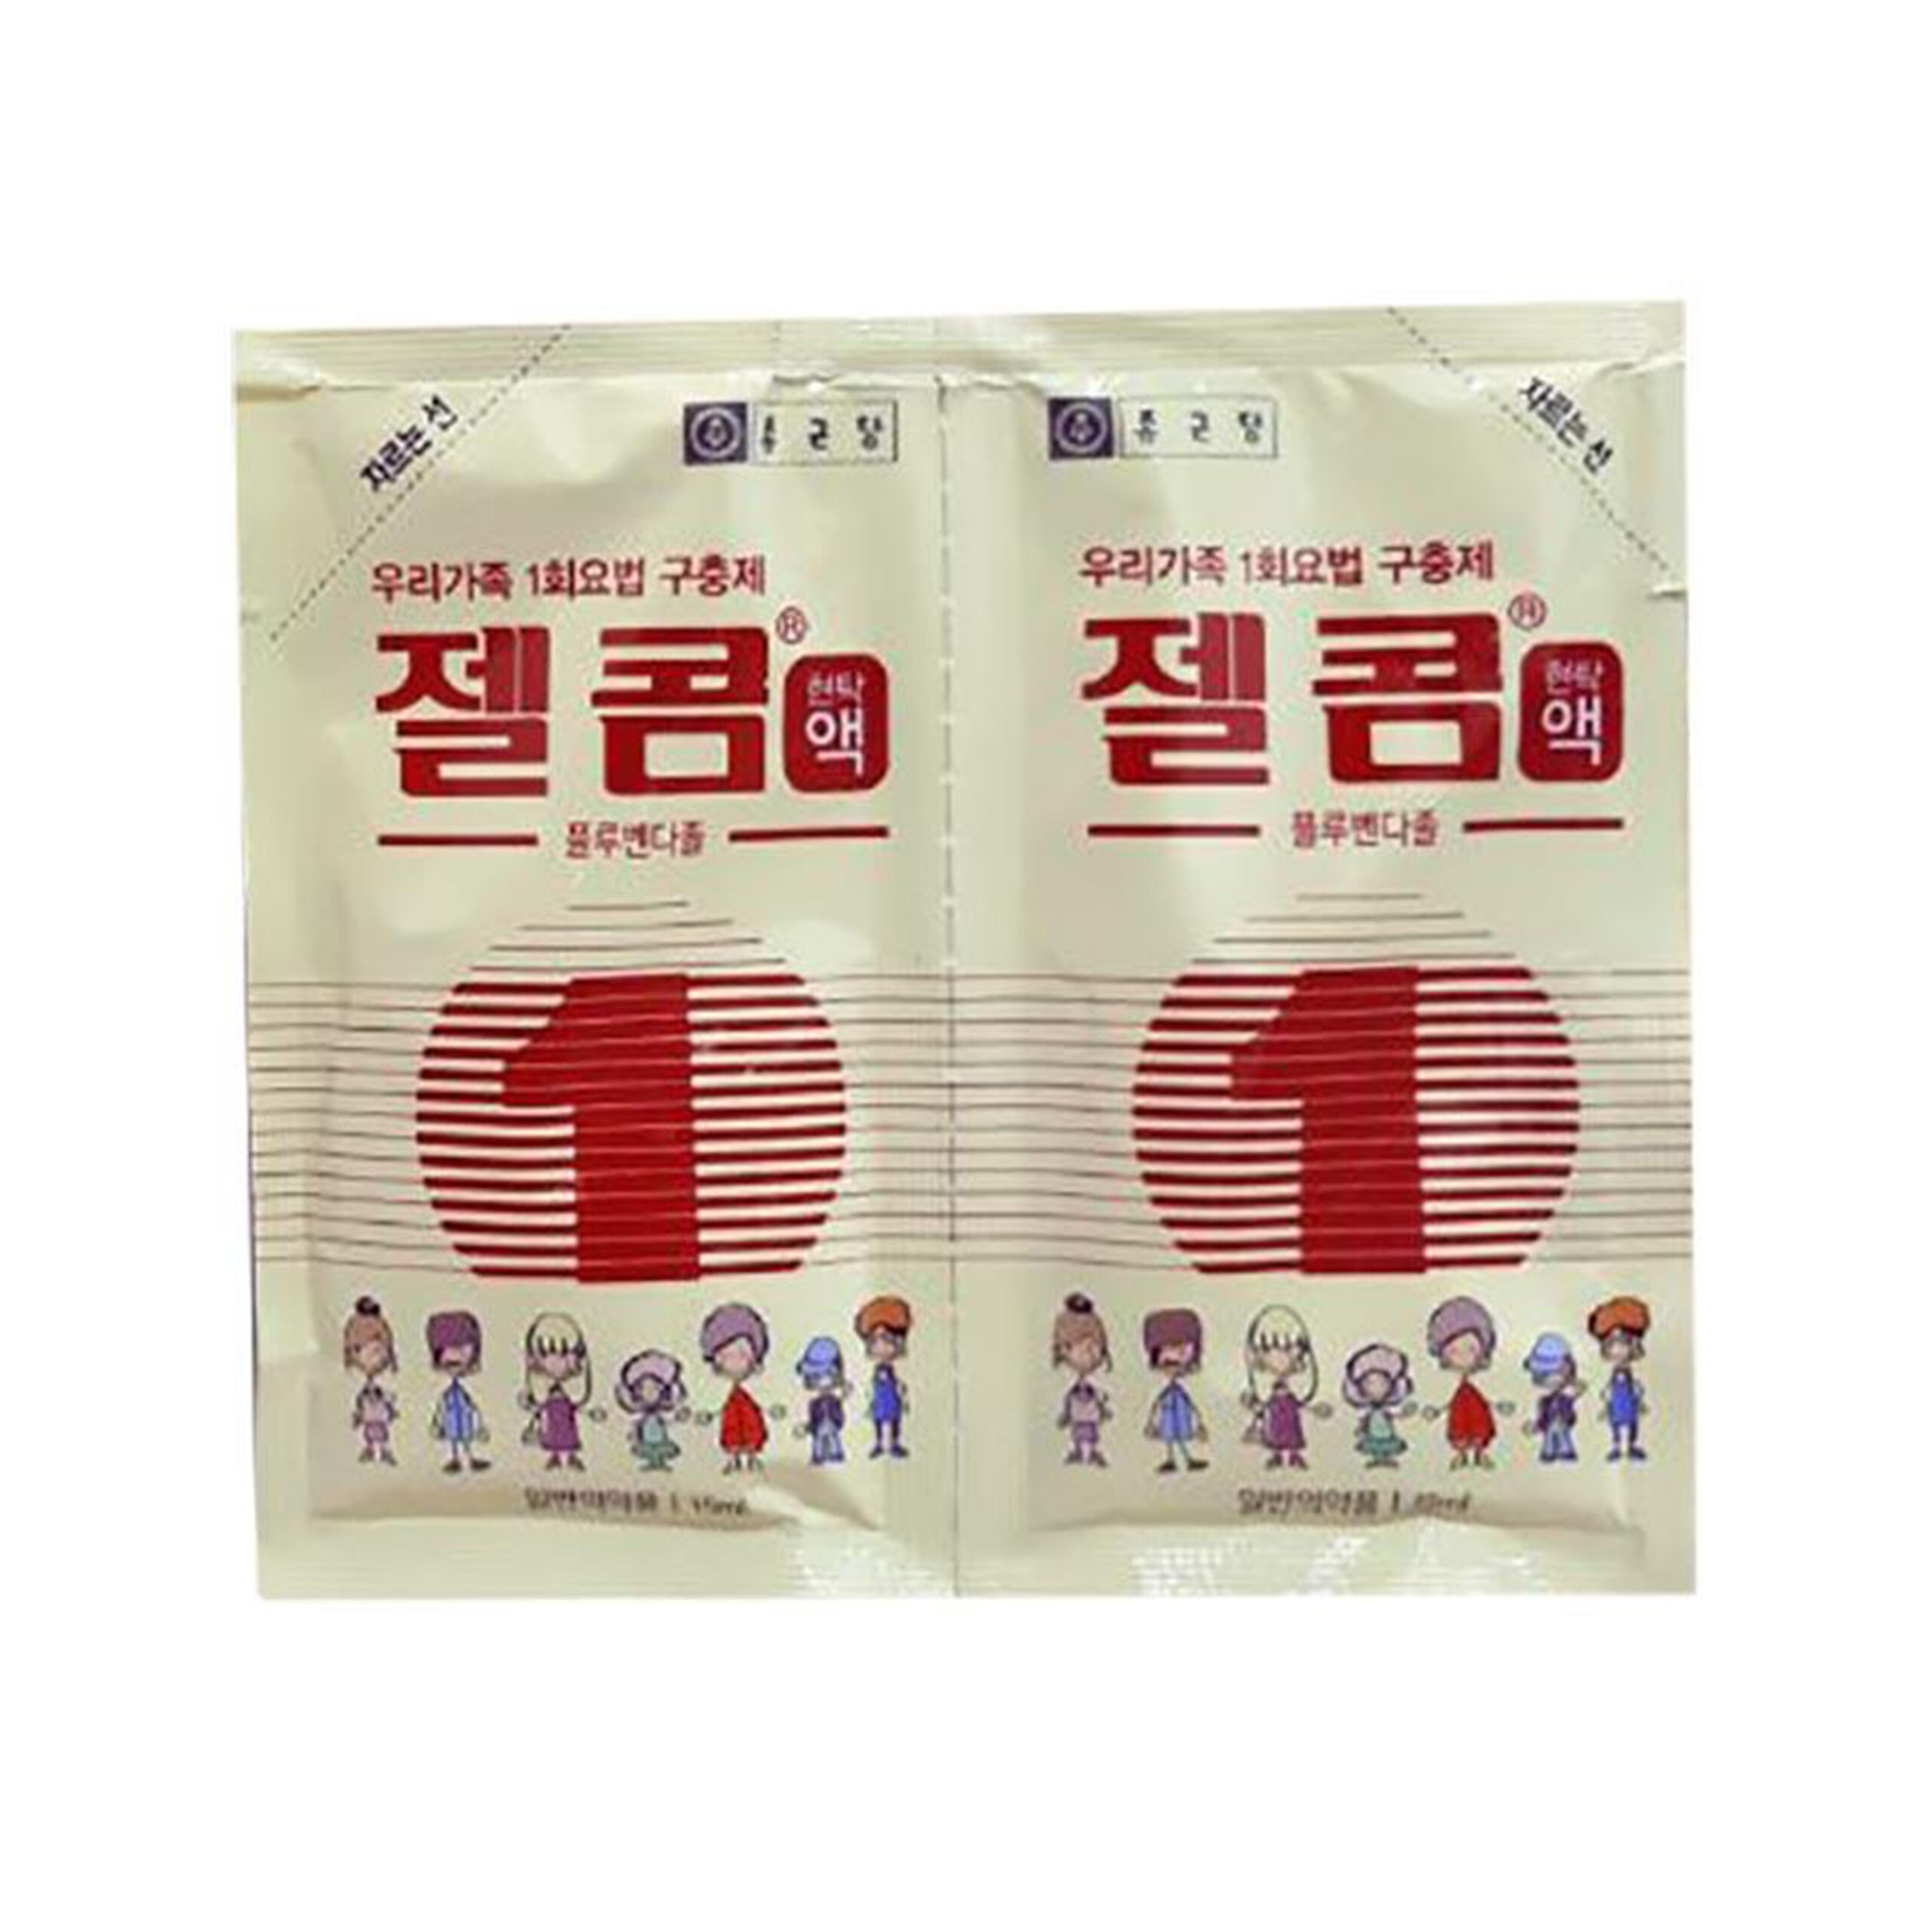 Thuốc tẩy giun Zelcom Hàn Quốc dạng siro 30ml - 2 gói x 15ml (cho bé từ 2 tuổi)